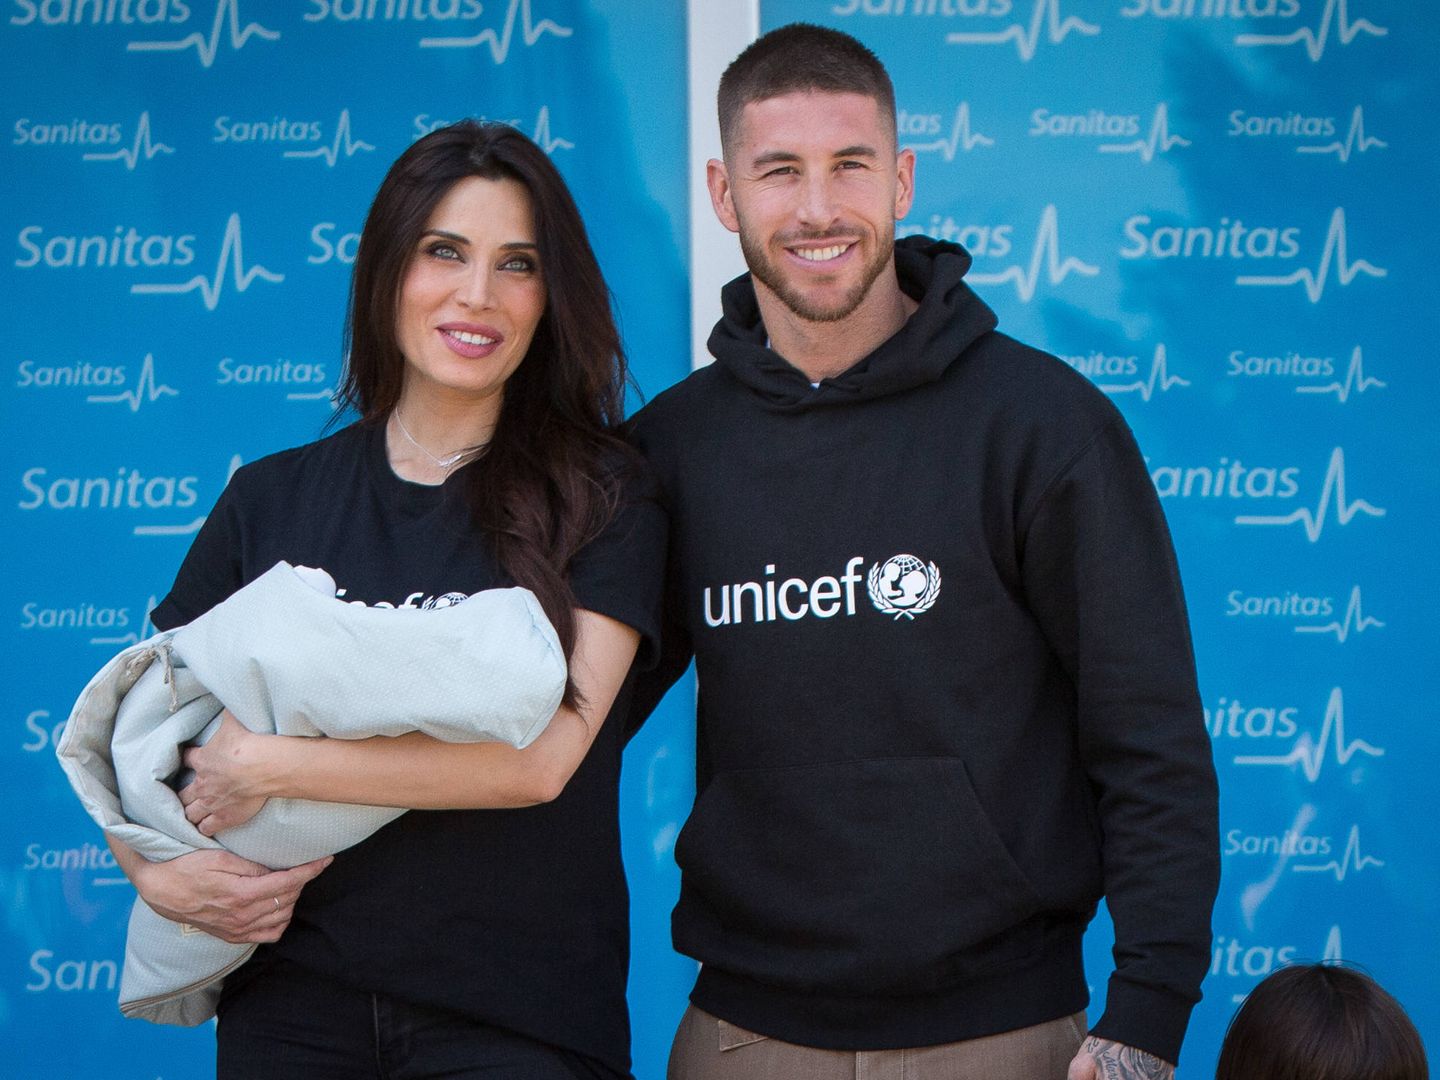 Pilar Rubio y Sergio Ramos presentan a su hijo recién nacido, con sendas prendas de Unicef. (Getty)